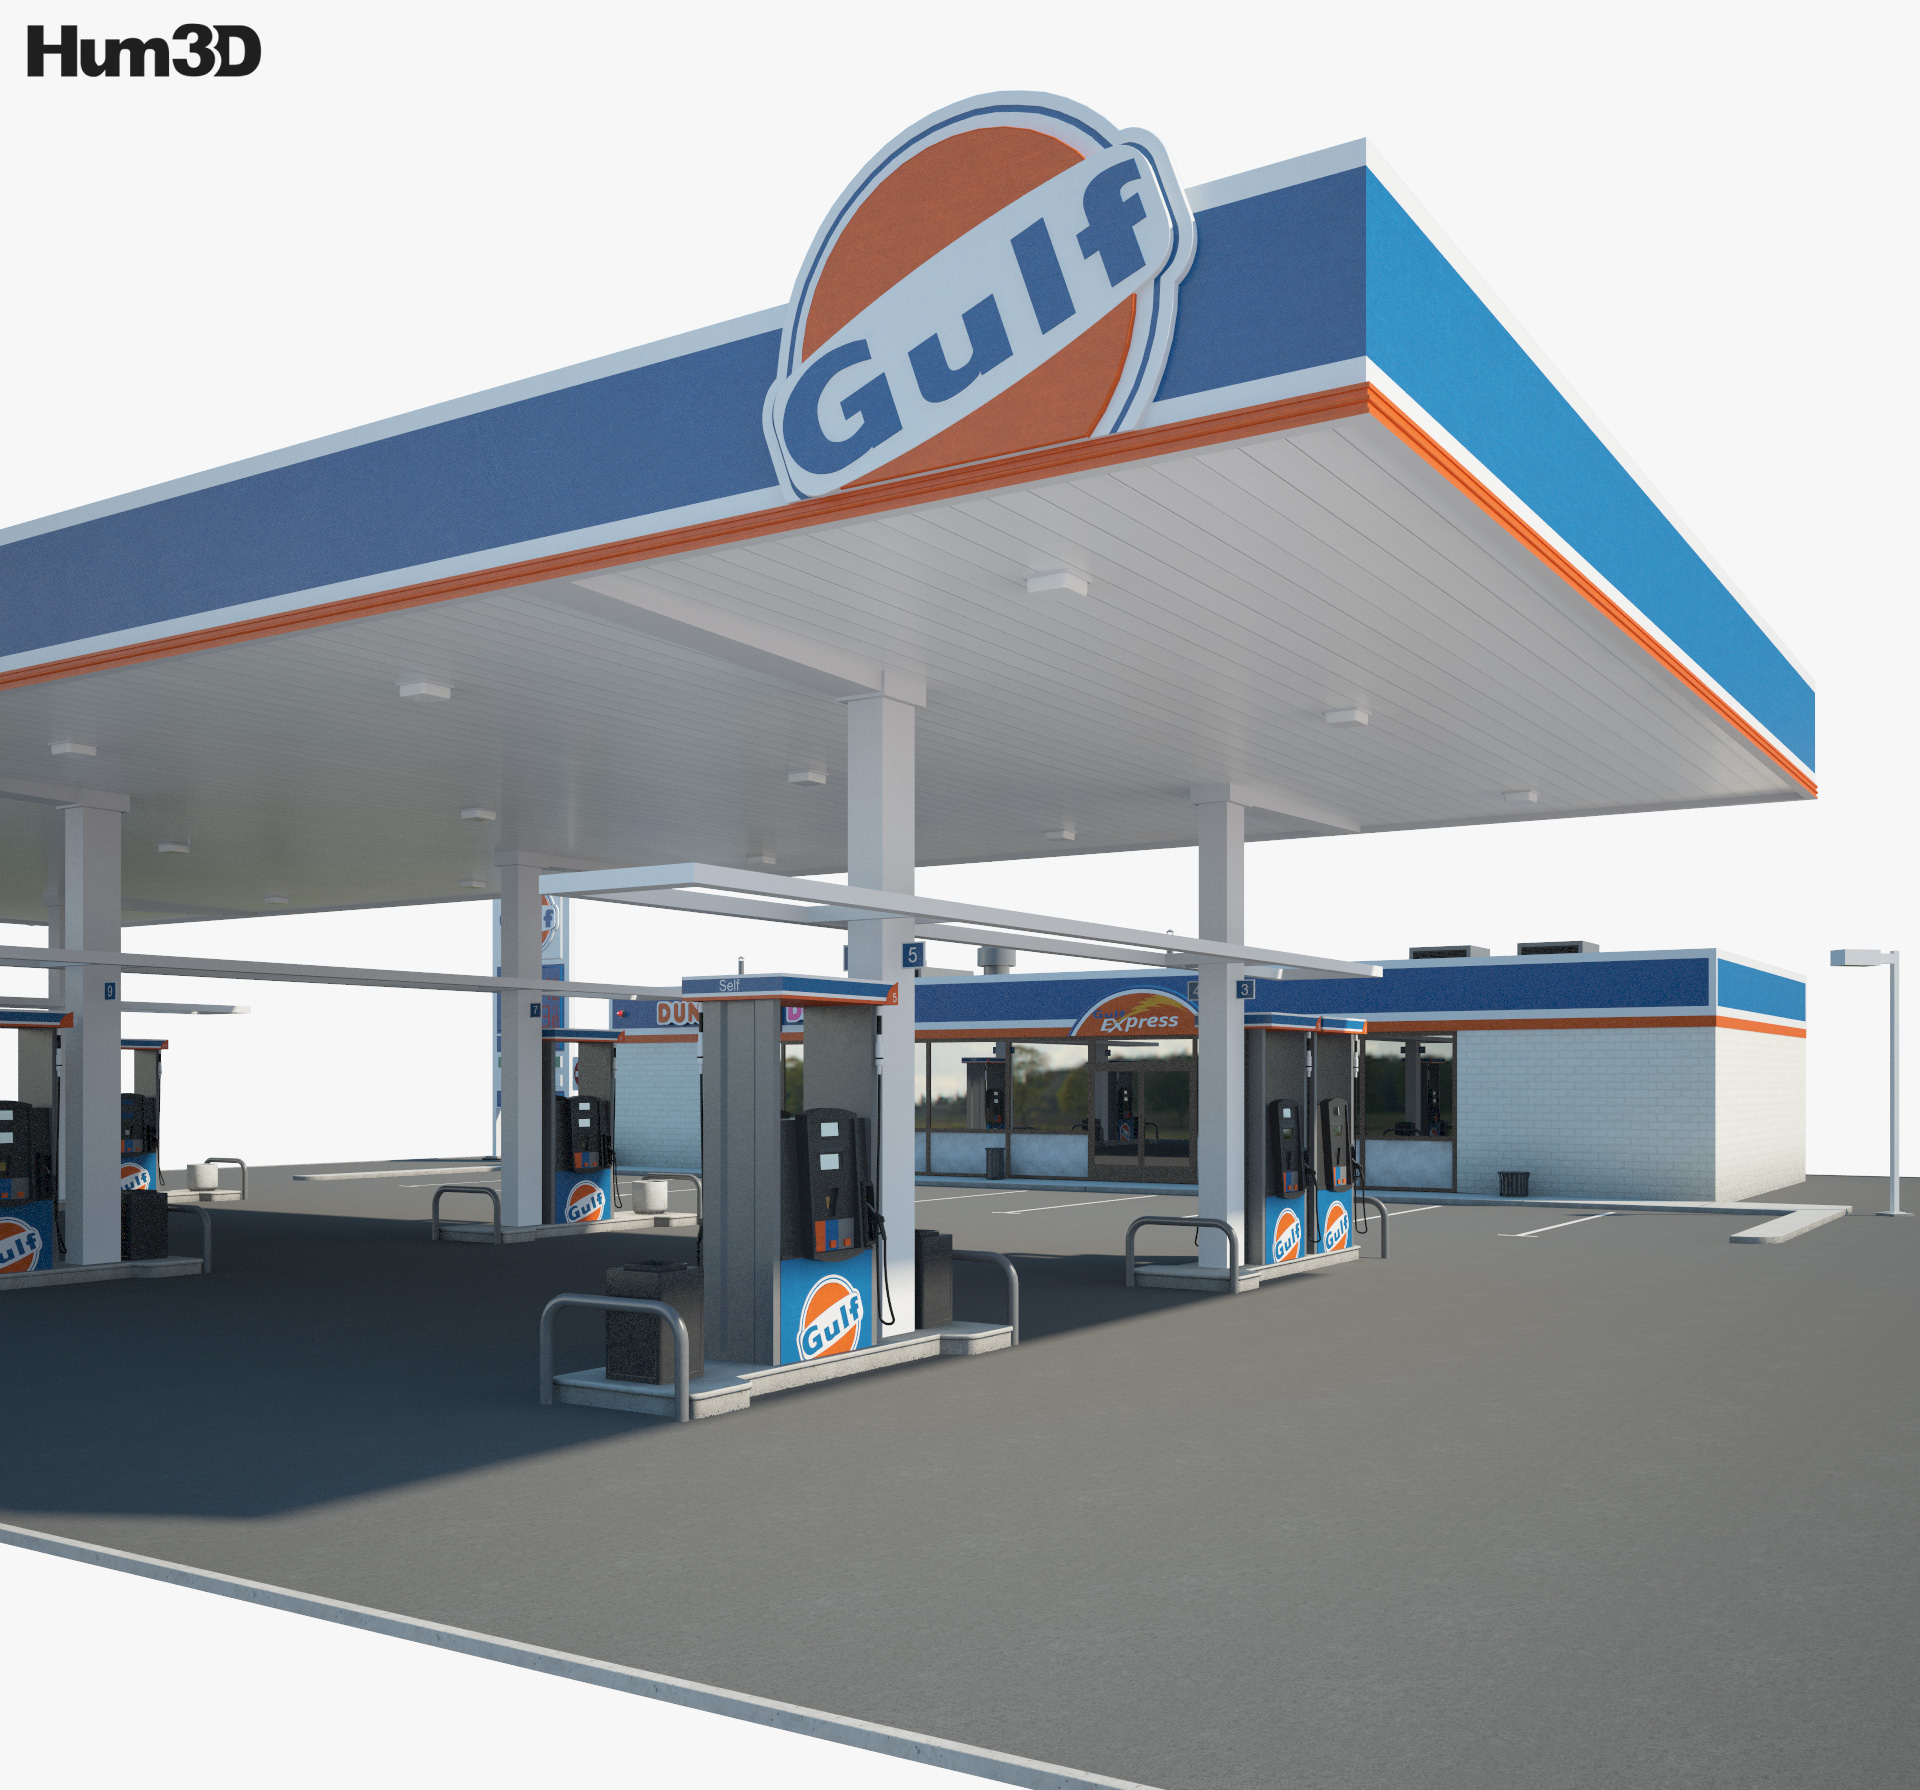 Gulf estación de servicio 001 Modelo 3D